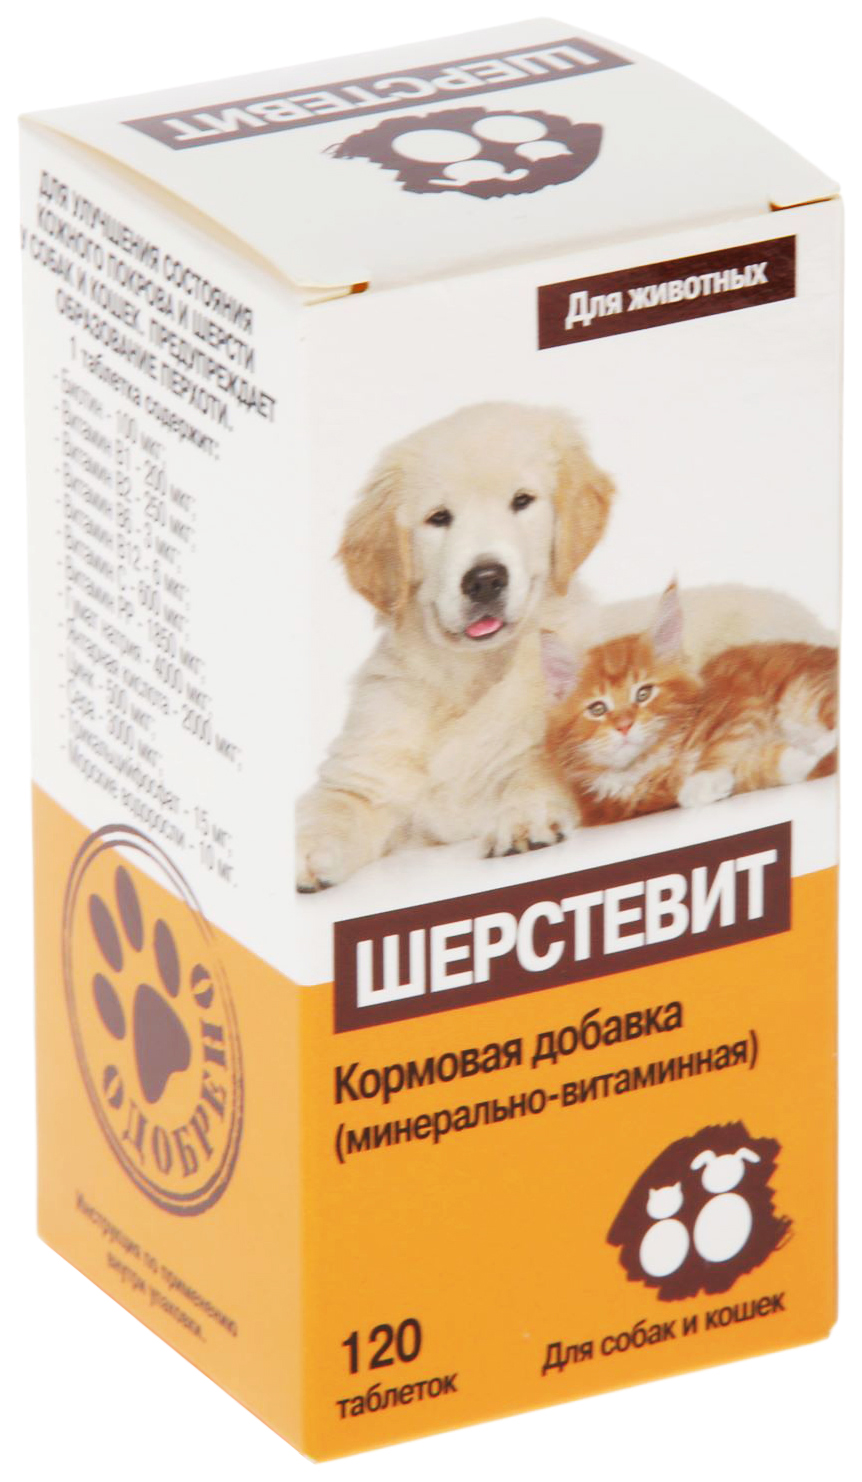 Минерально-витаминная добавка для собак и кошек Квант МКБ Шерстевит, 120 табл